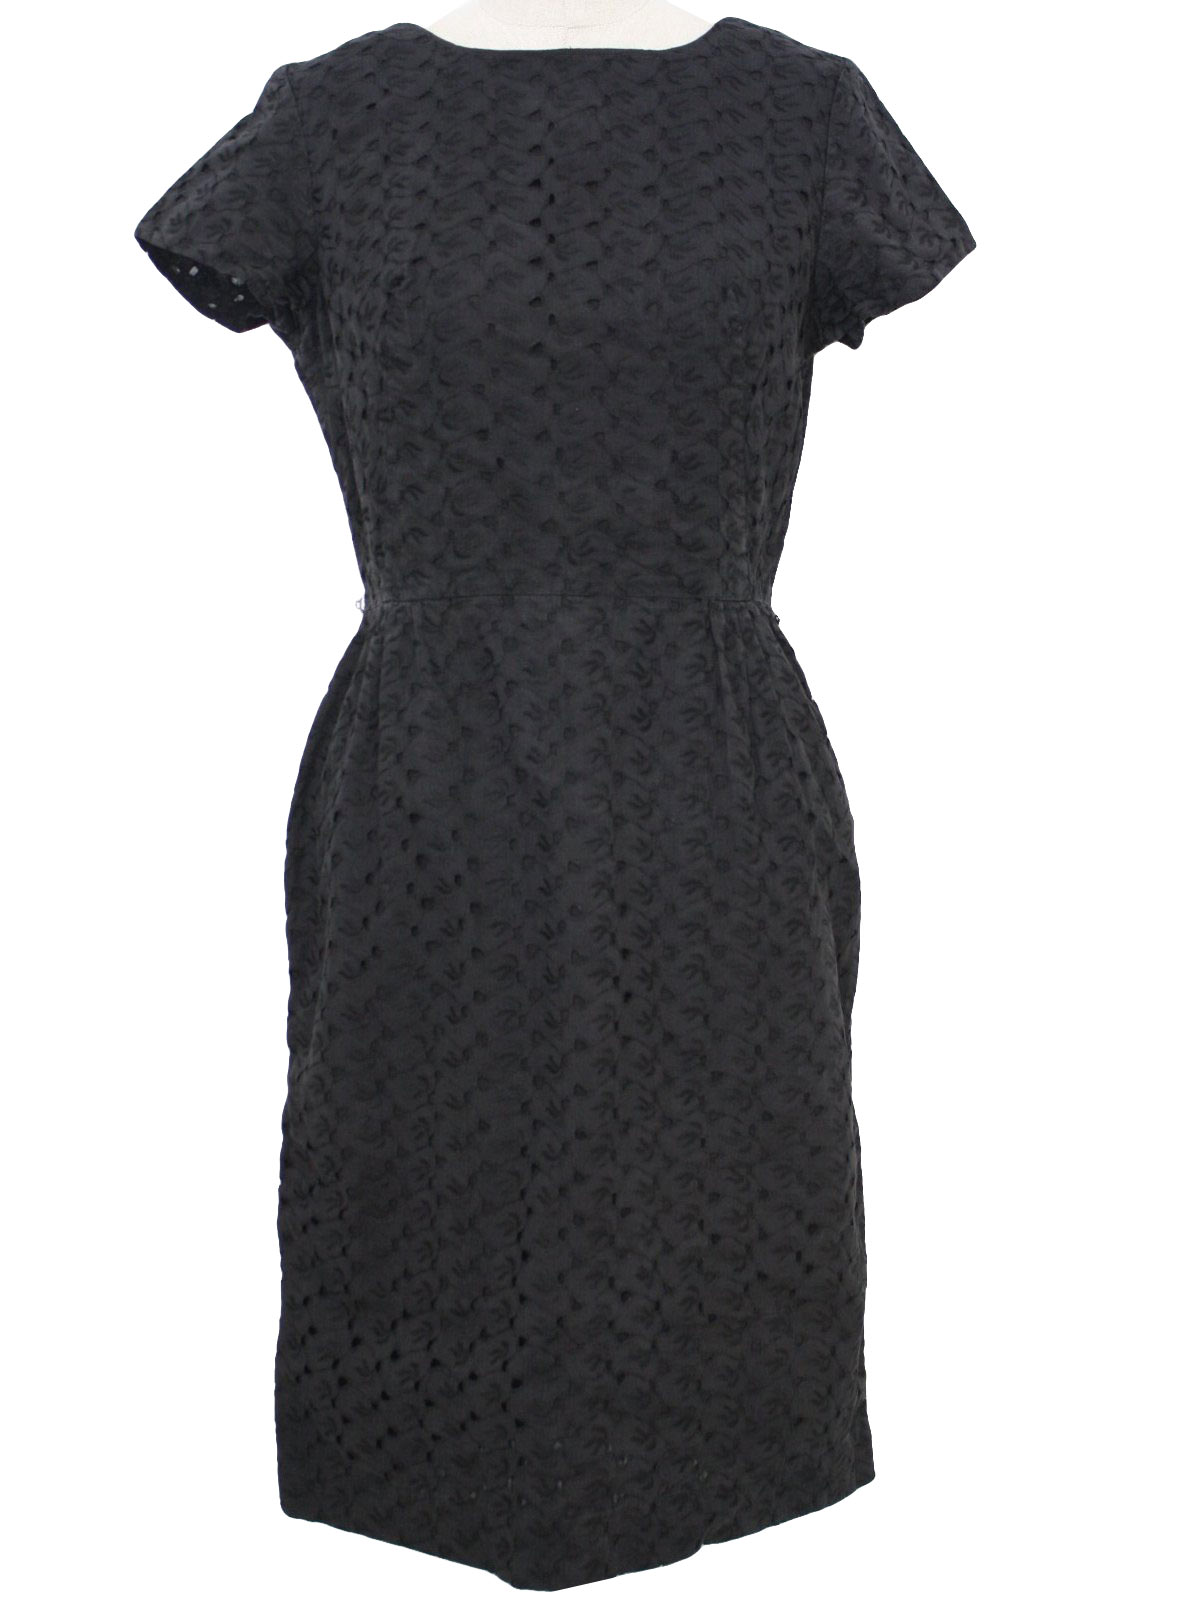 1950 s sears little black wiggle dress 50s sears womens black cotton ...